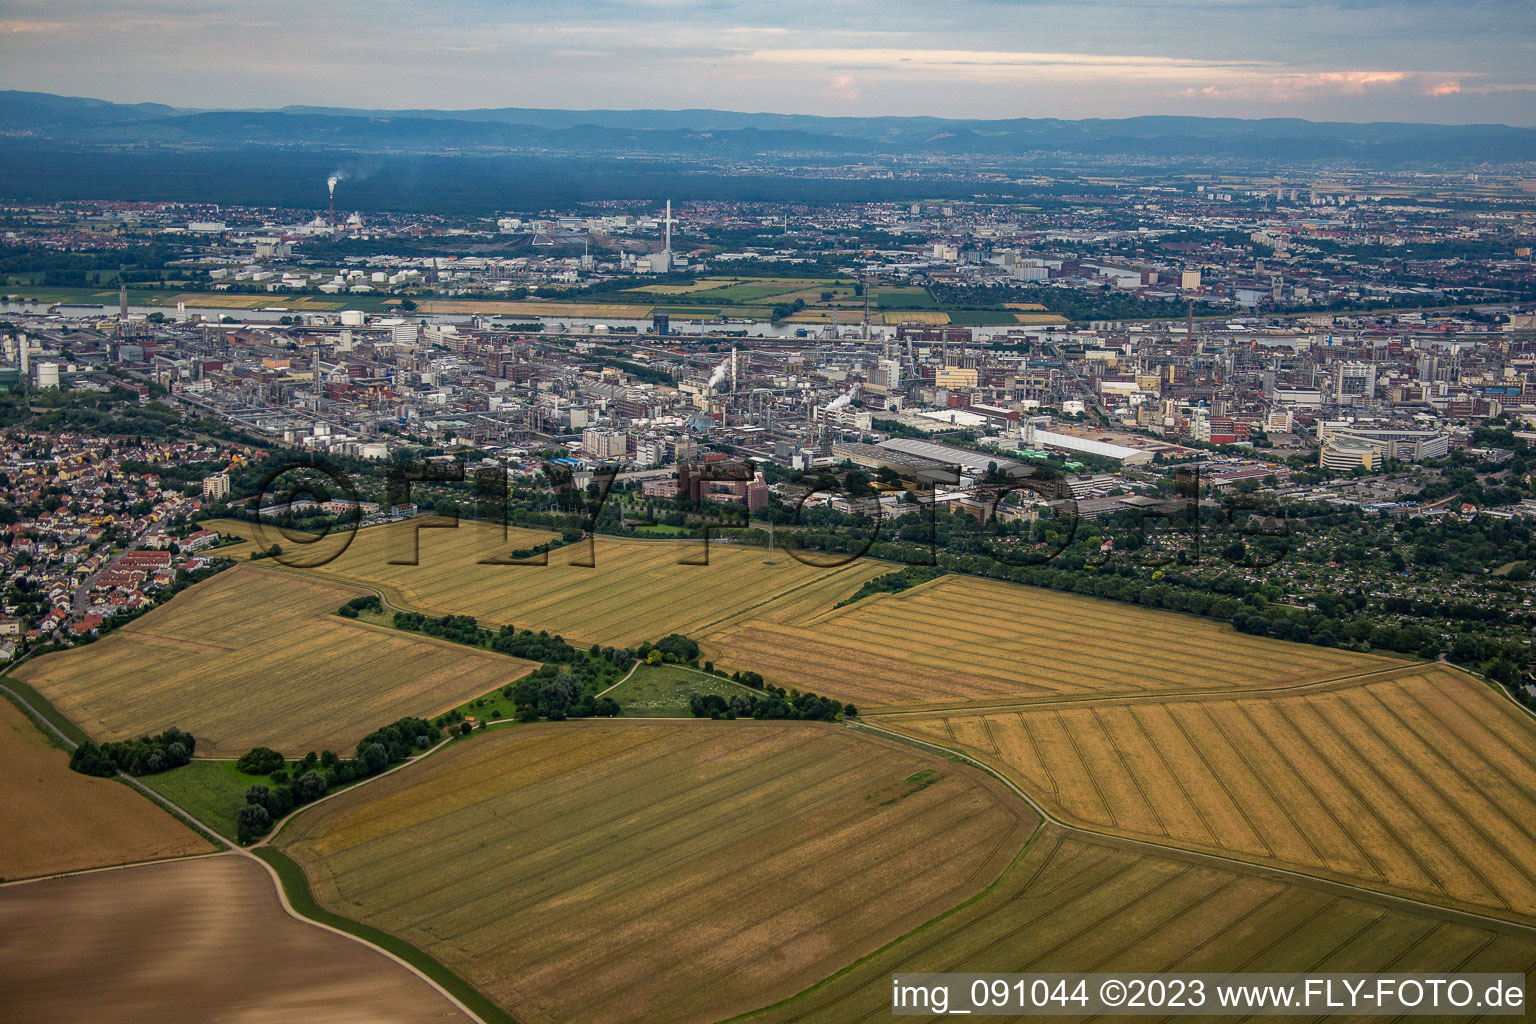 Photographie aérienne de BASF de l'ouest à le quartier Friesenheim in Ludwigshafen am Rhein dans le département Rhénanie-Palatinat, Allemagne